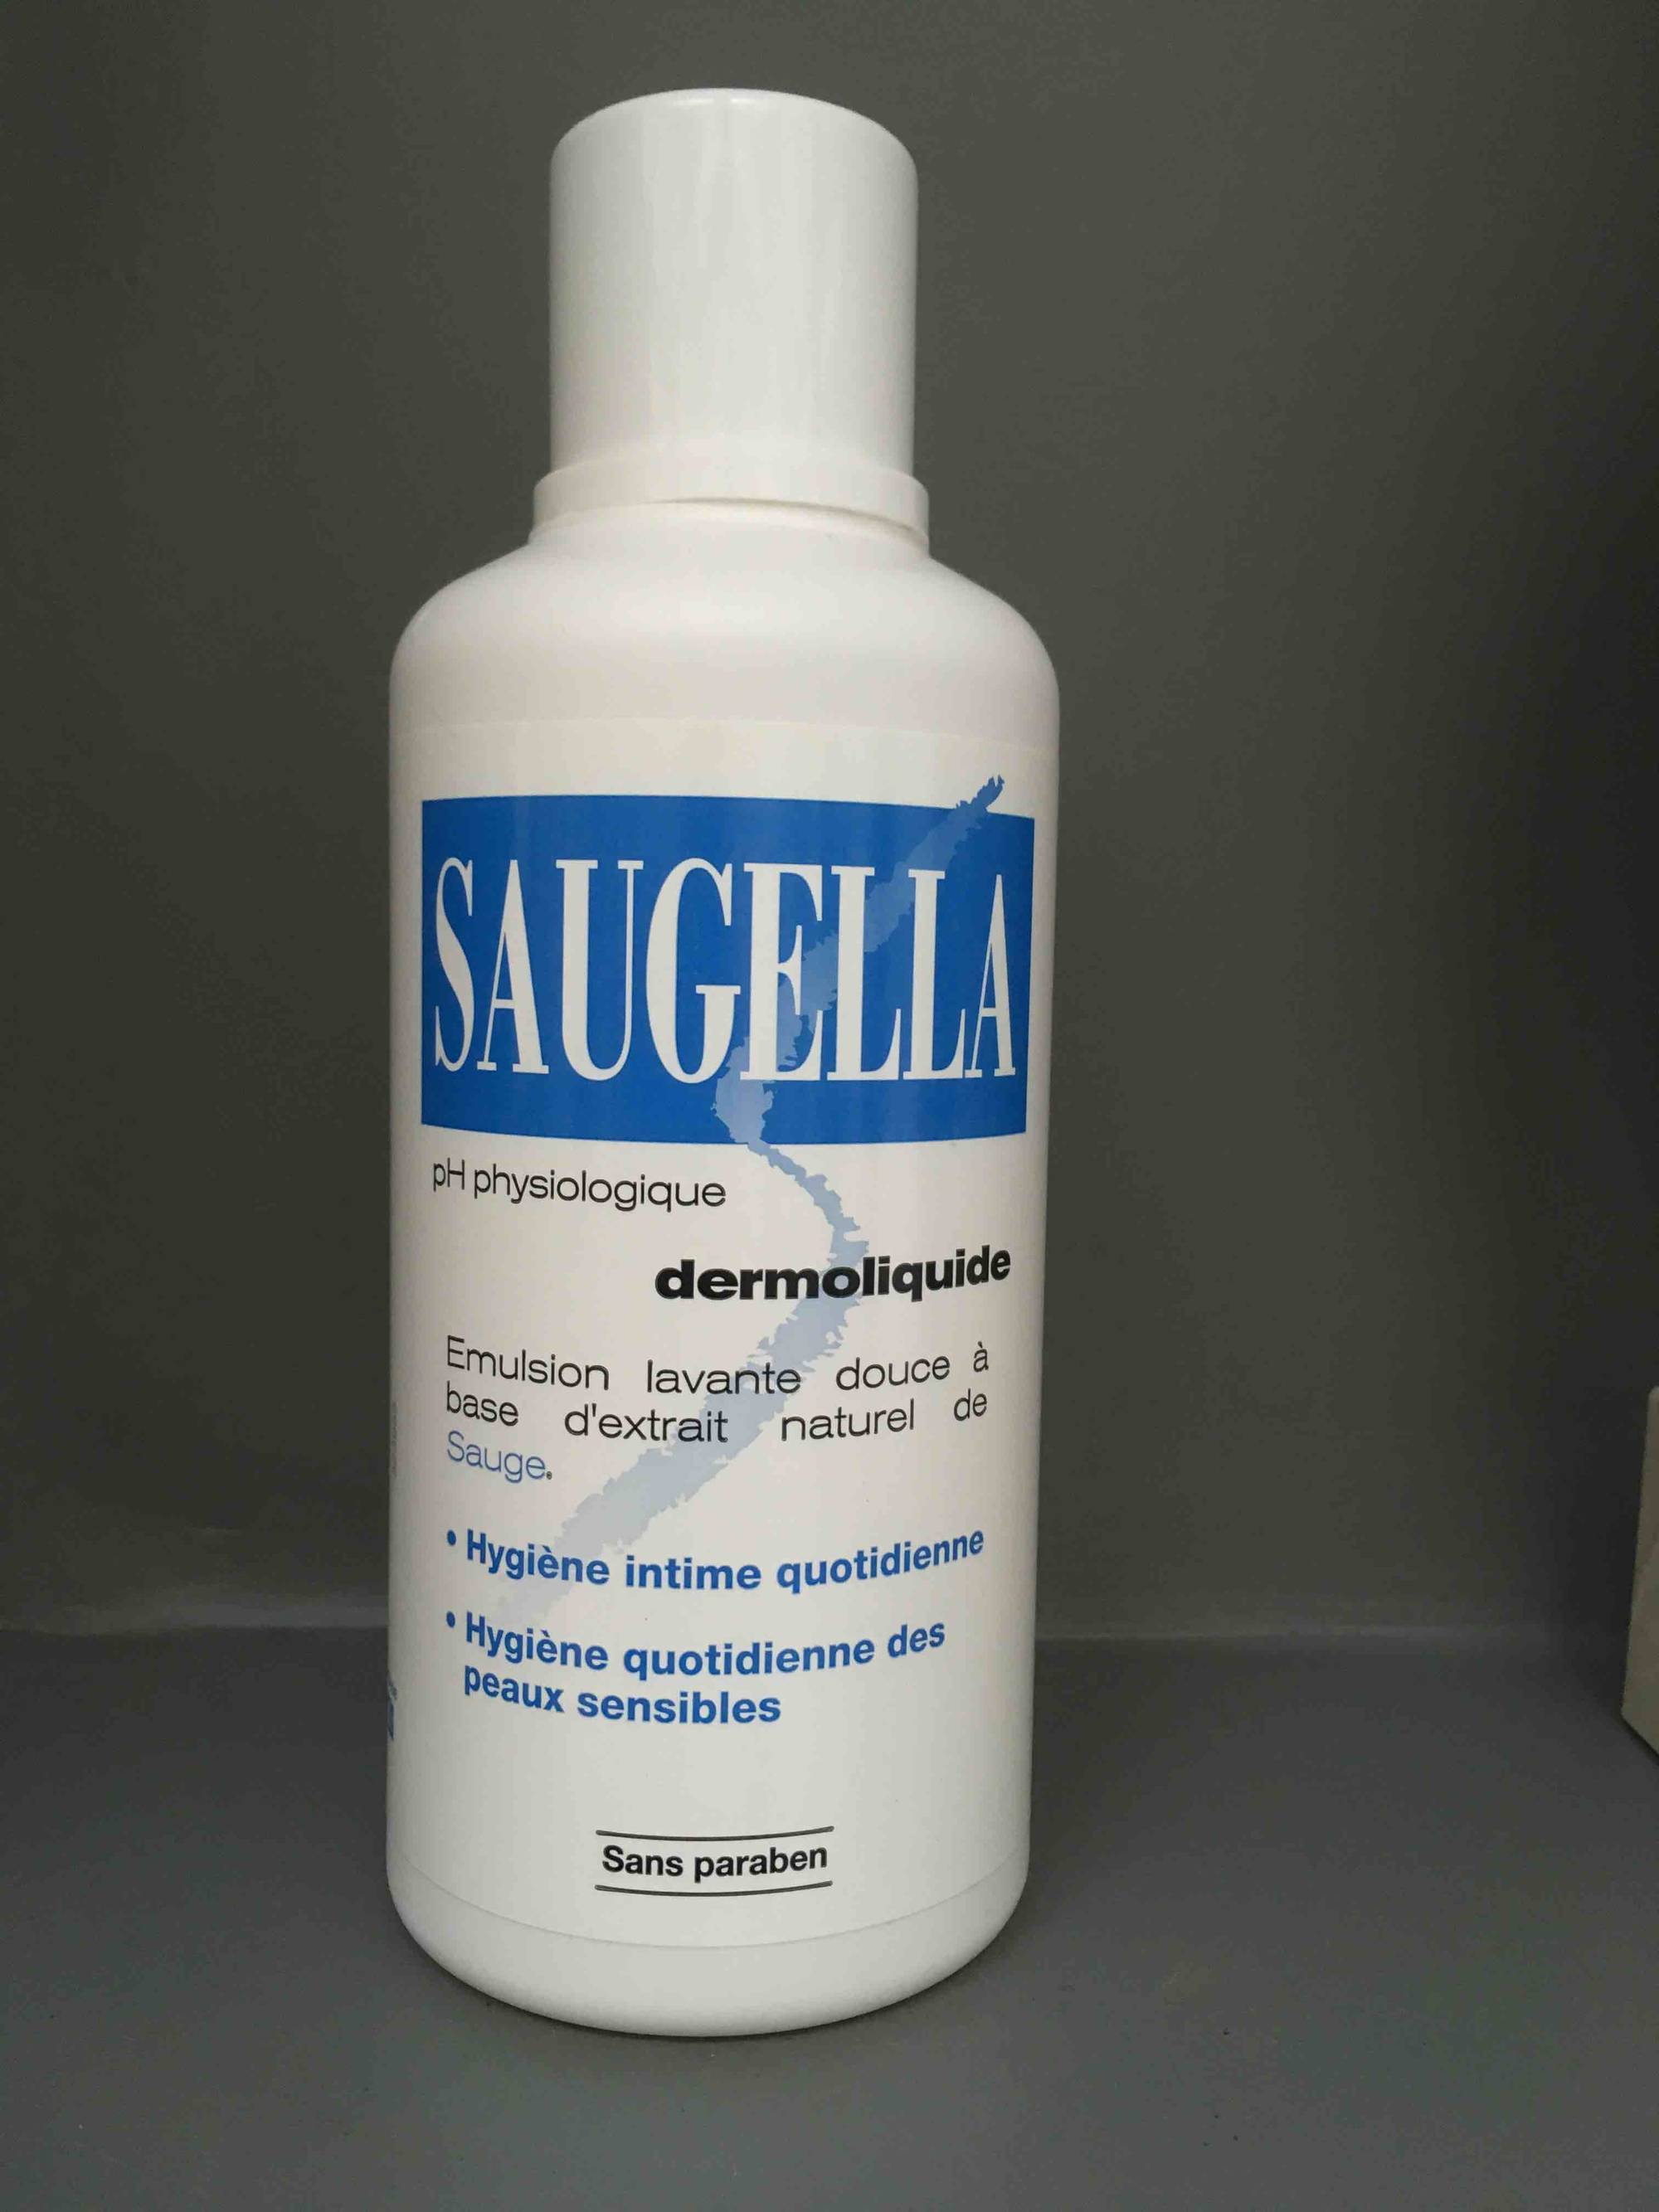 Saugella : Antiseptique naturel émulsion lavante Saugella, flacon